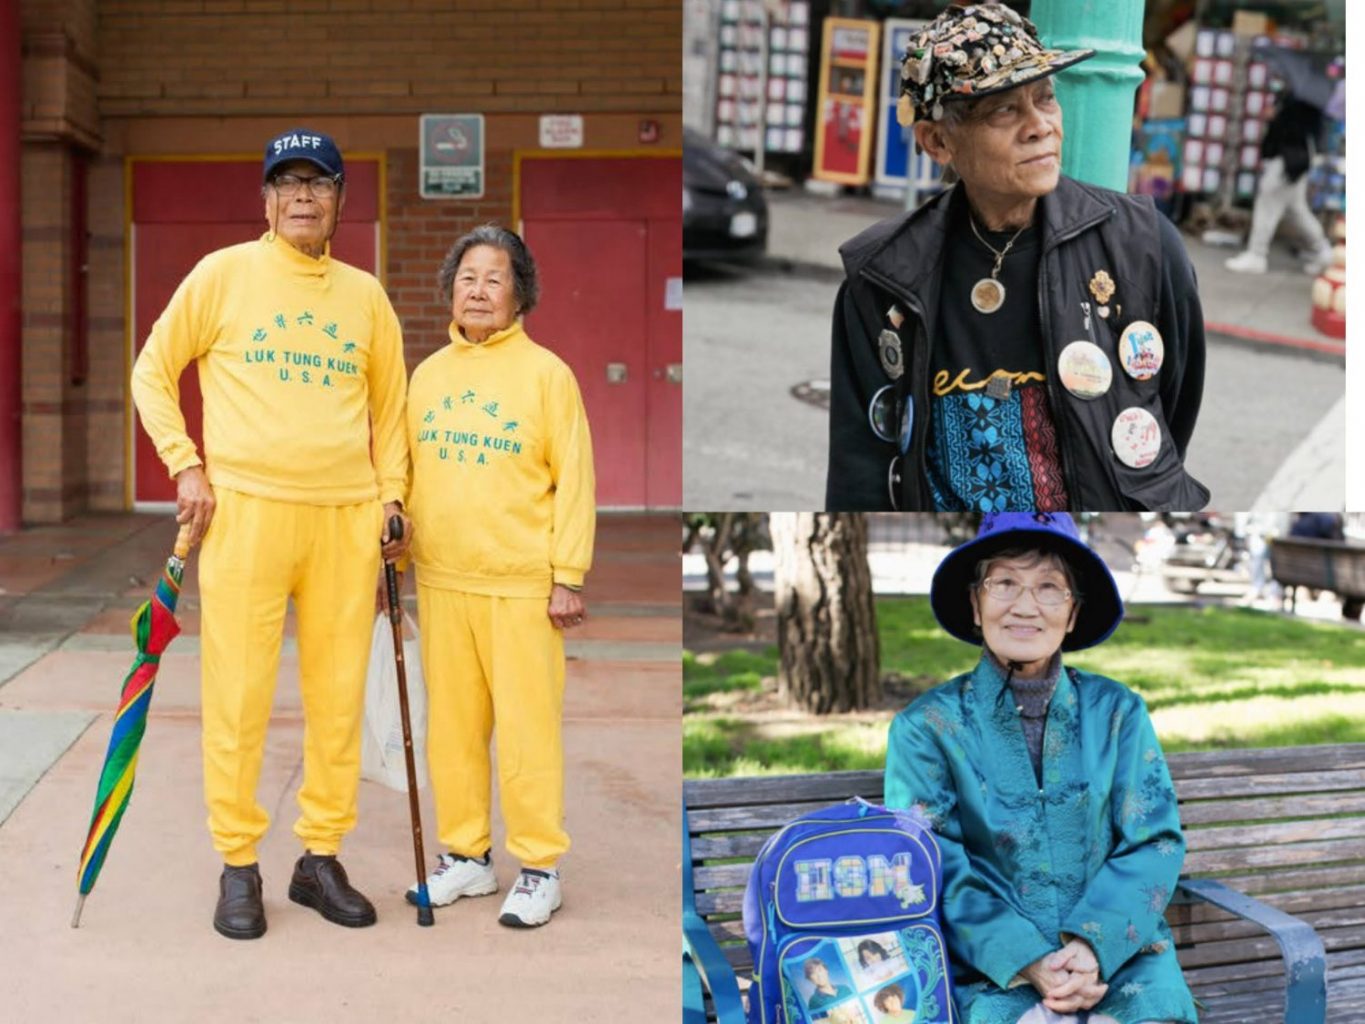 ChinatownPretty zelebriert modische asiatische Senioren